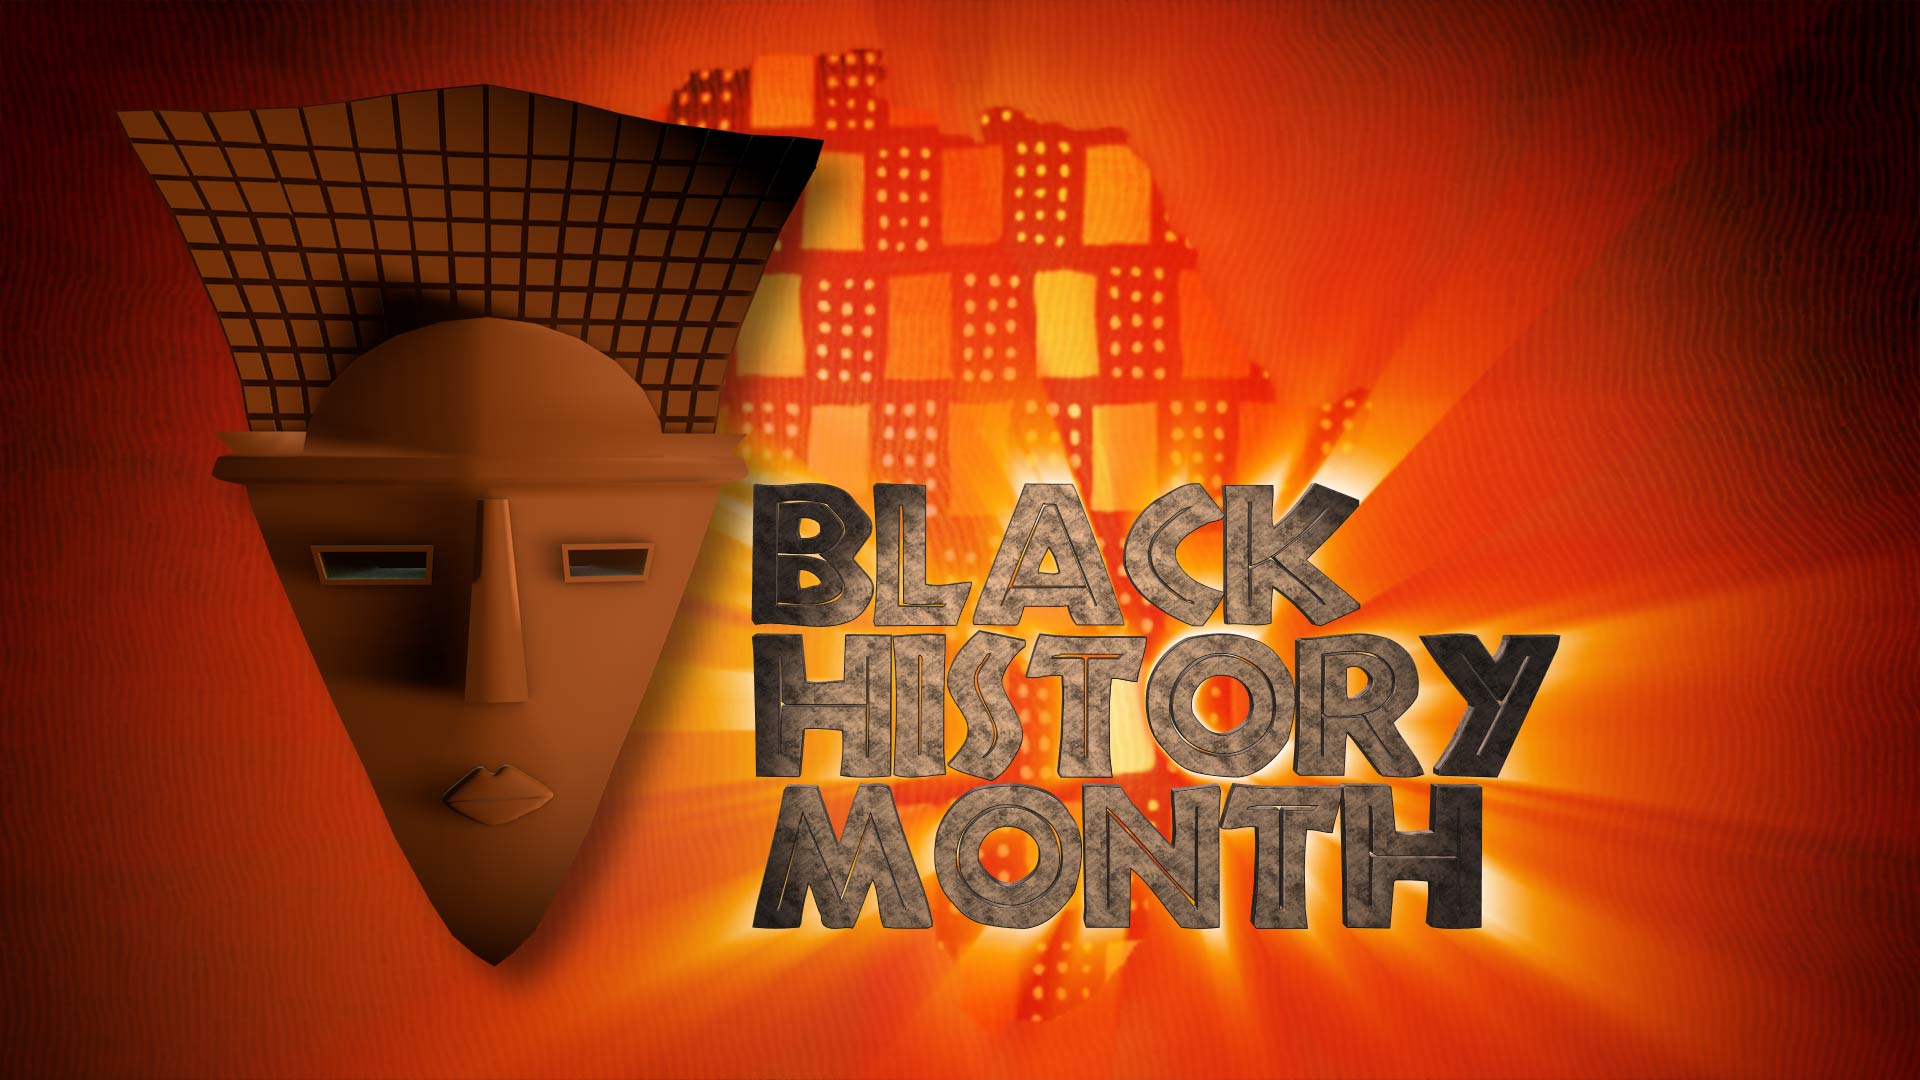 sfondo del mese della storia nera,arancia,font,testo,grafica,disegno grafico